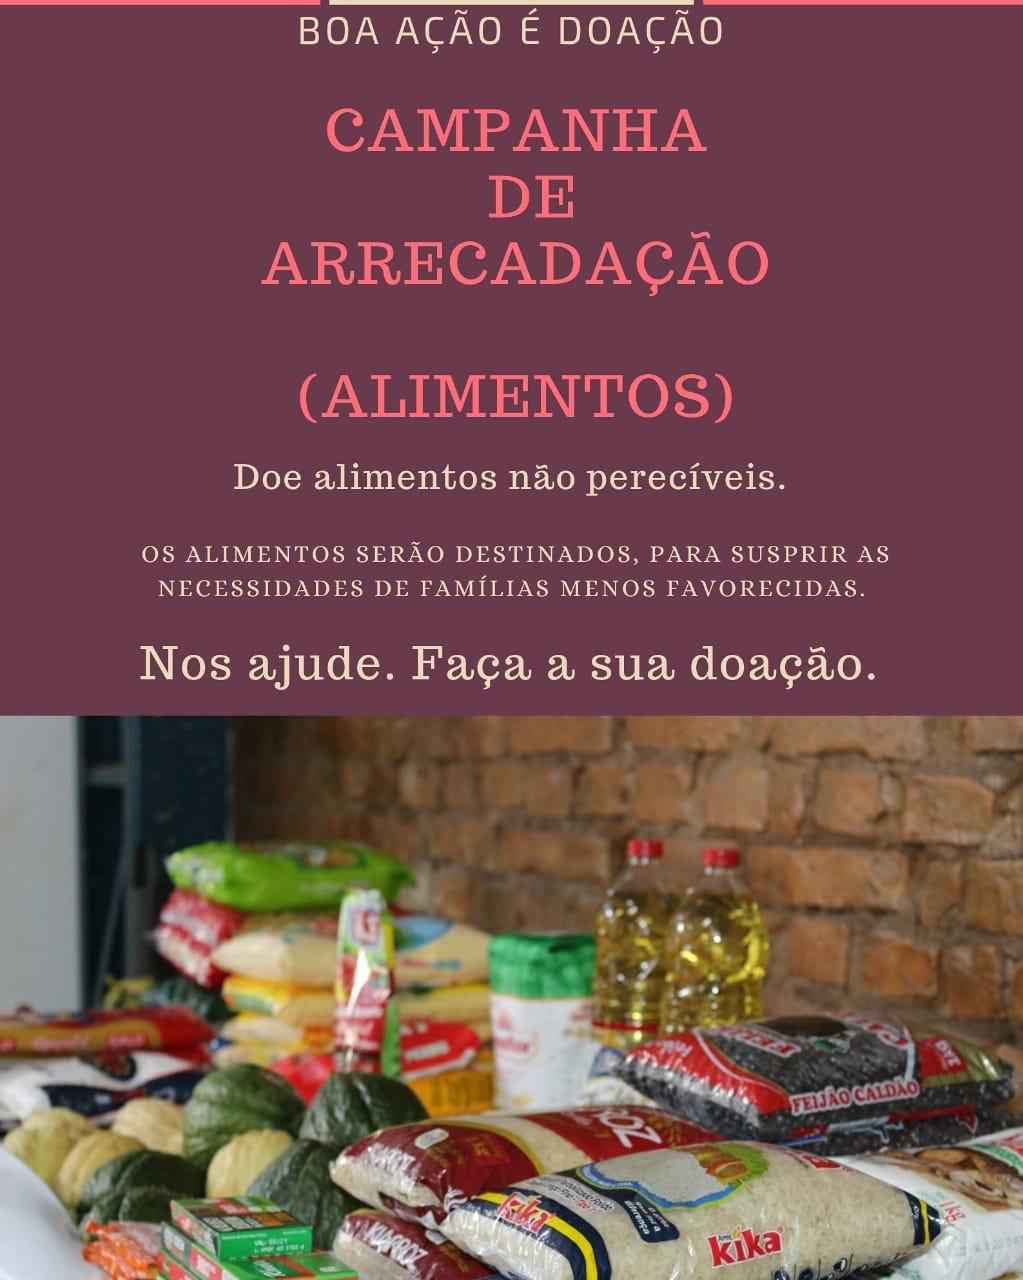 Grupo de amigos promove campanha de arrecadação de alimentos em Picos